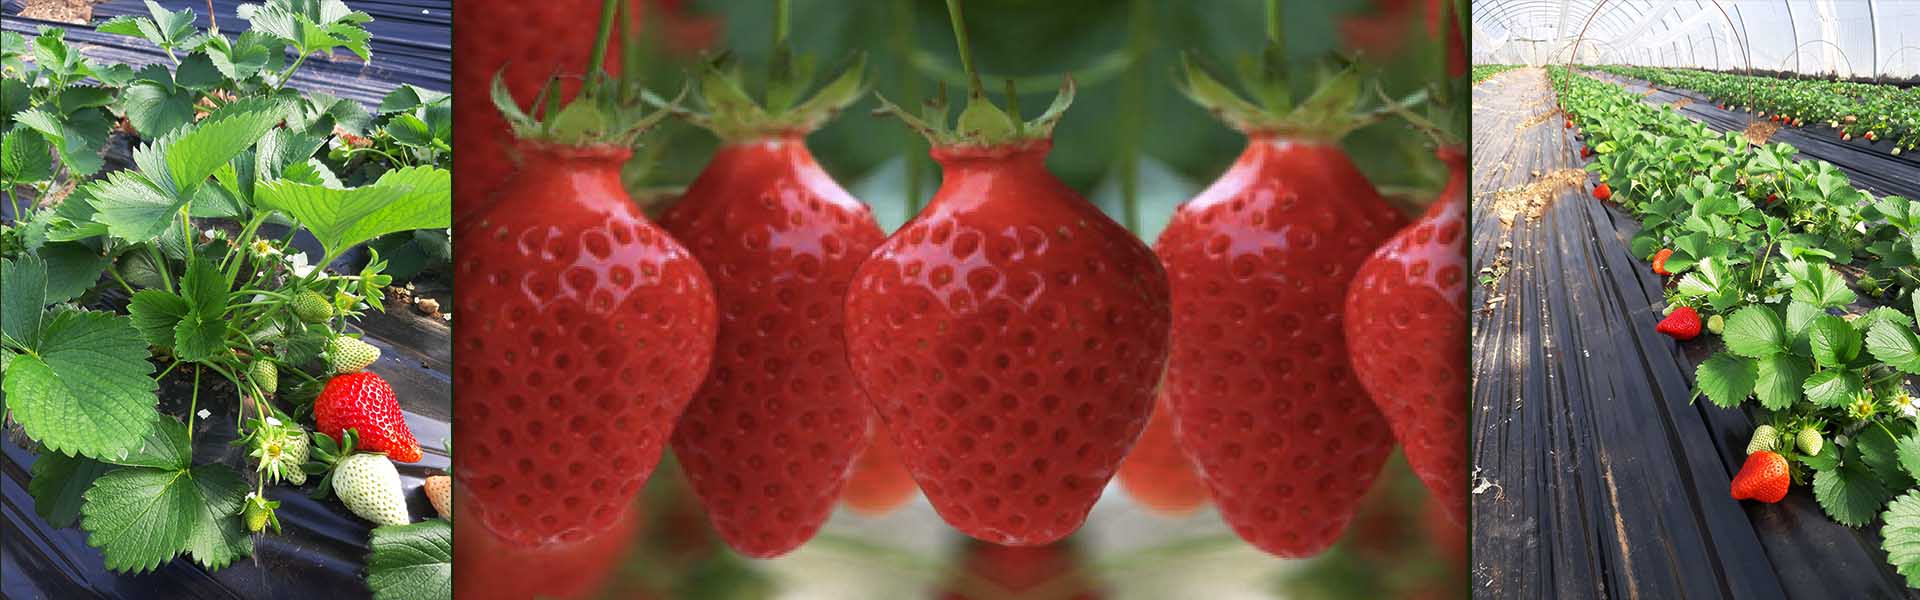 des fraises au goût incomparable